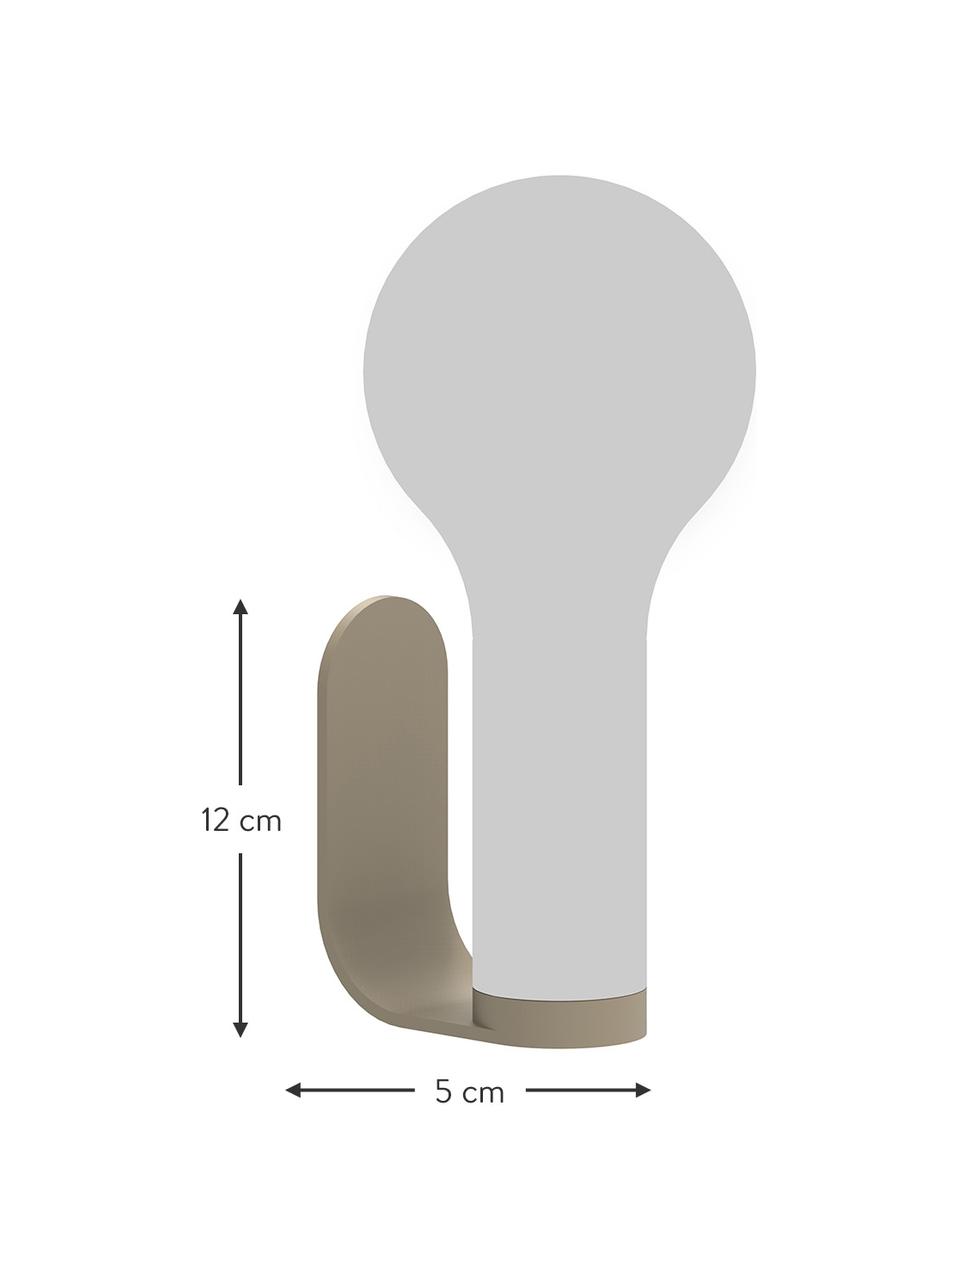 Mocowanie ścienne do lampy zewnętrznej Aplô, Gałka muszkatołowa, S 5 x W 12 cm